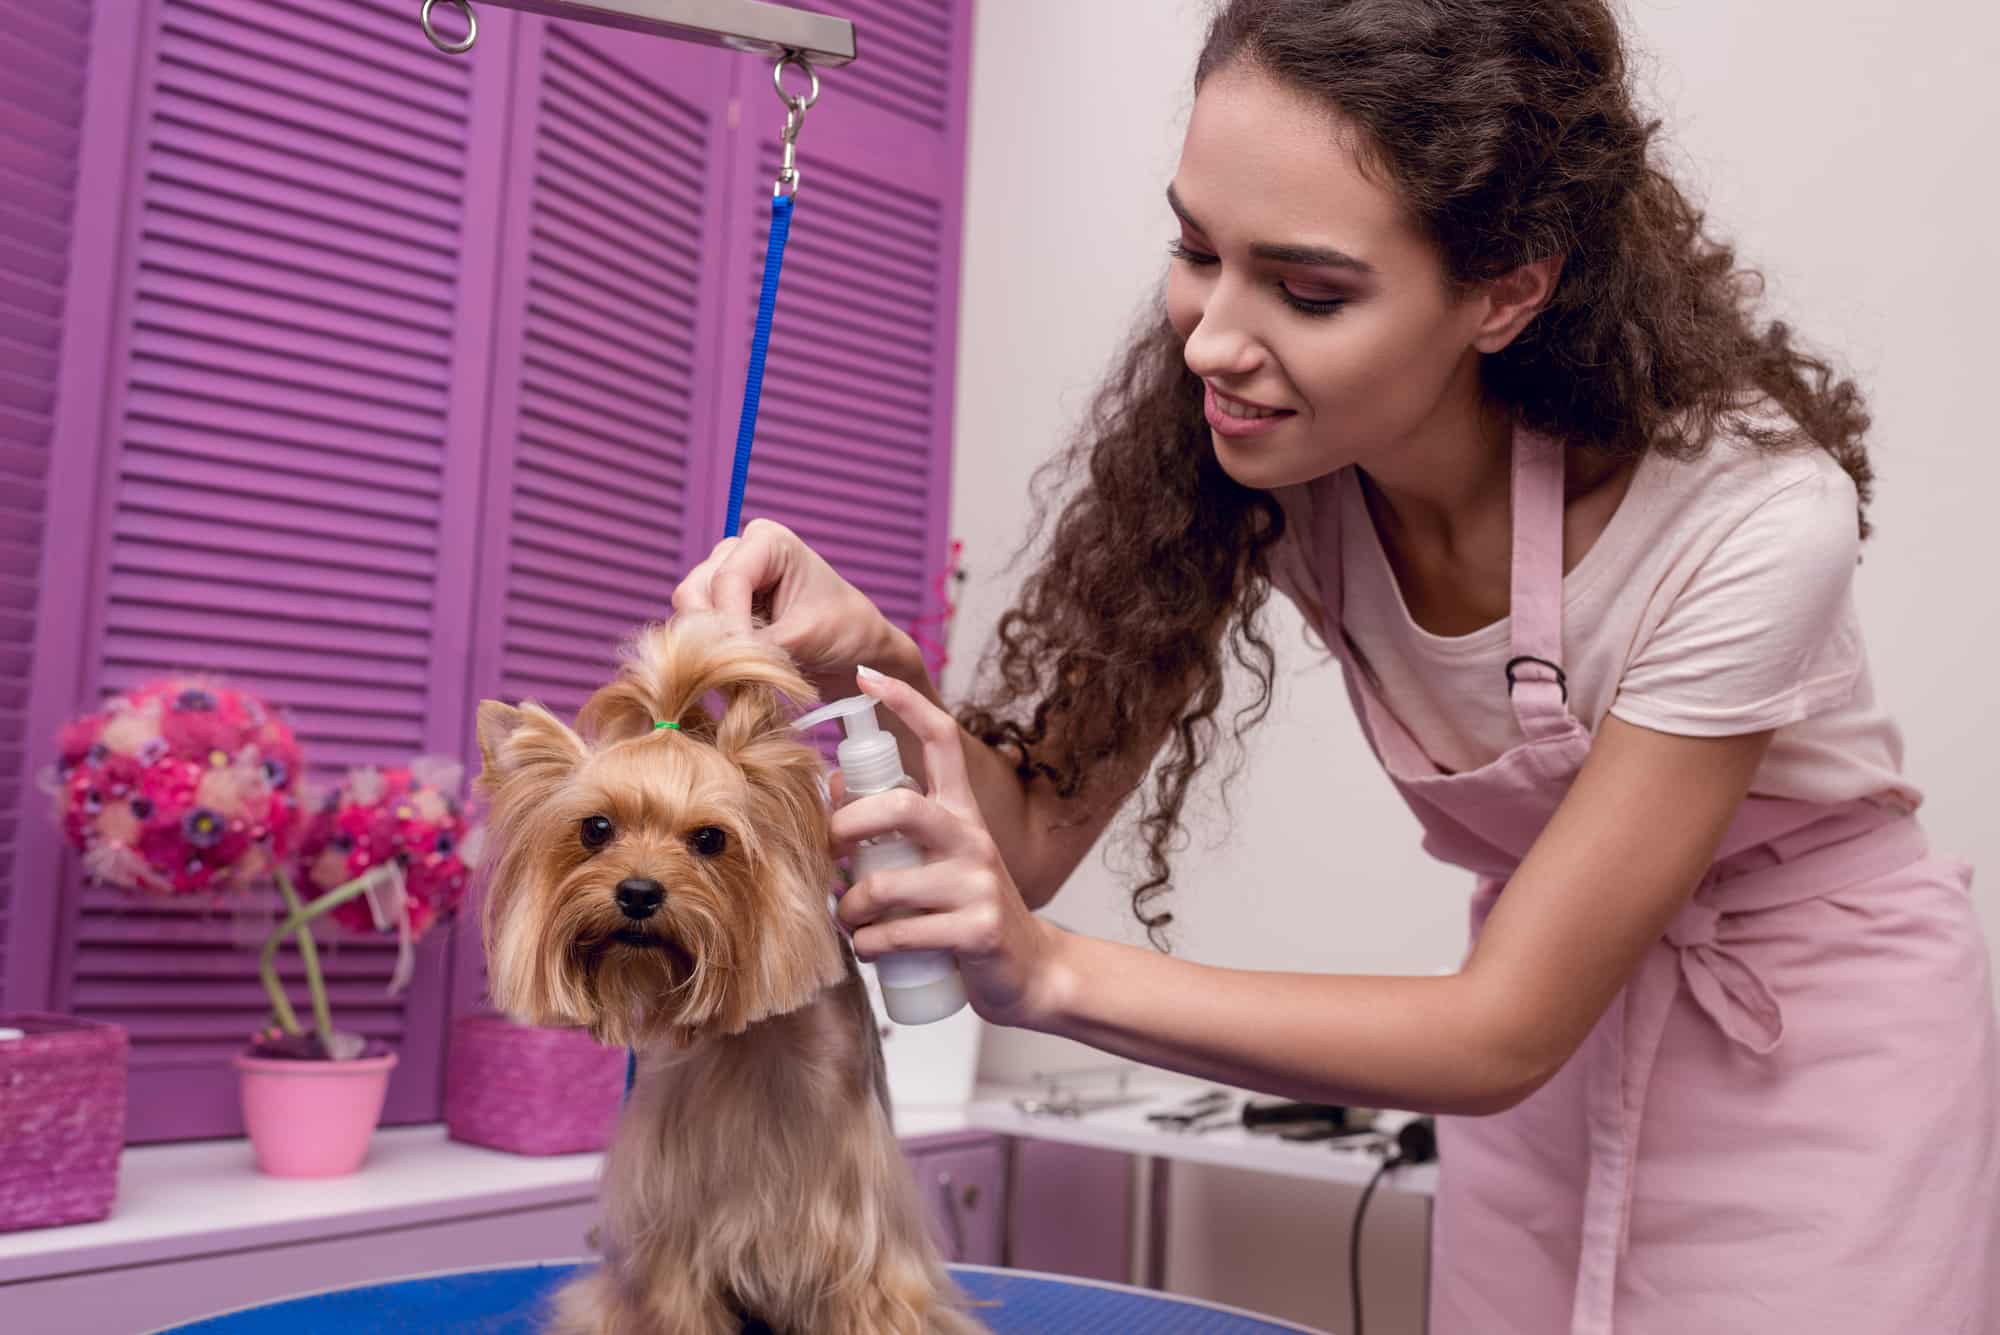 Is Pet Salon Business in Dubai a Good Idea